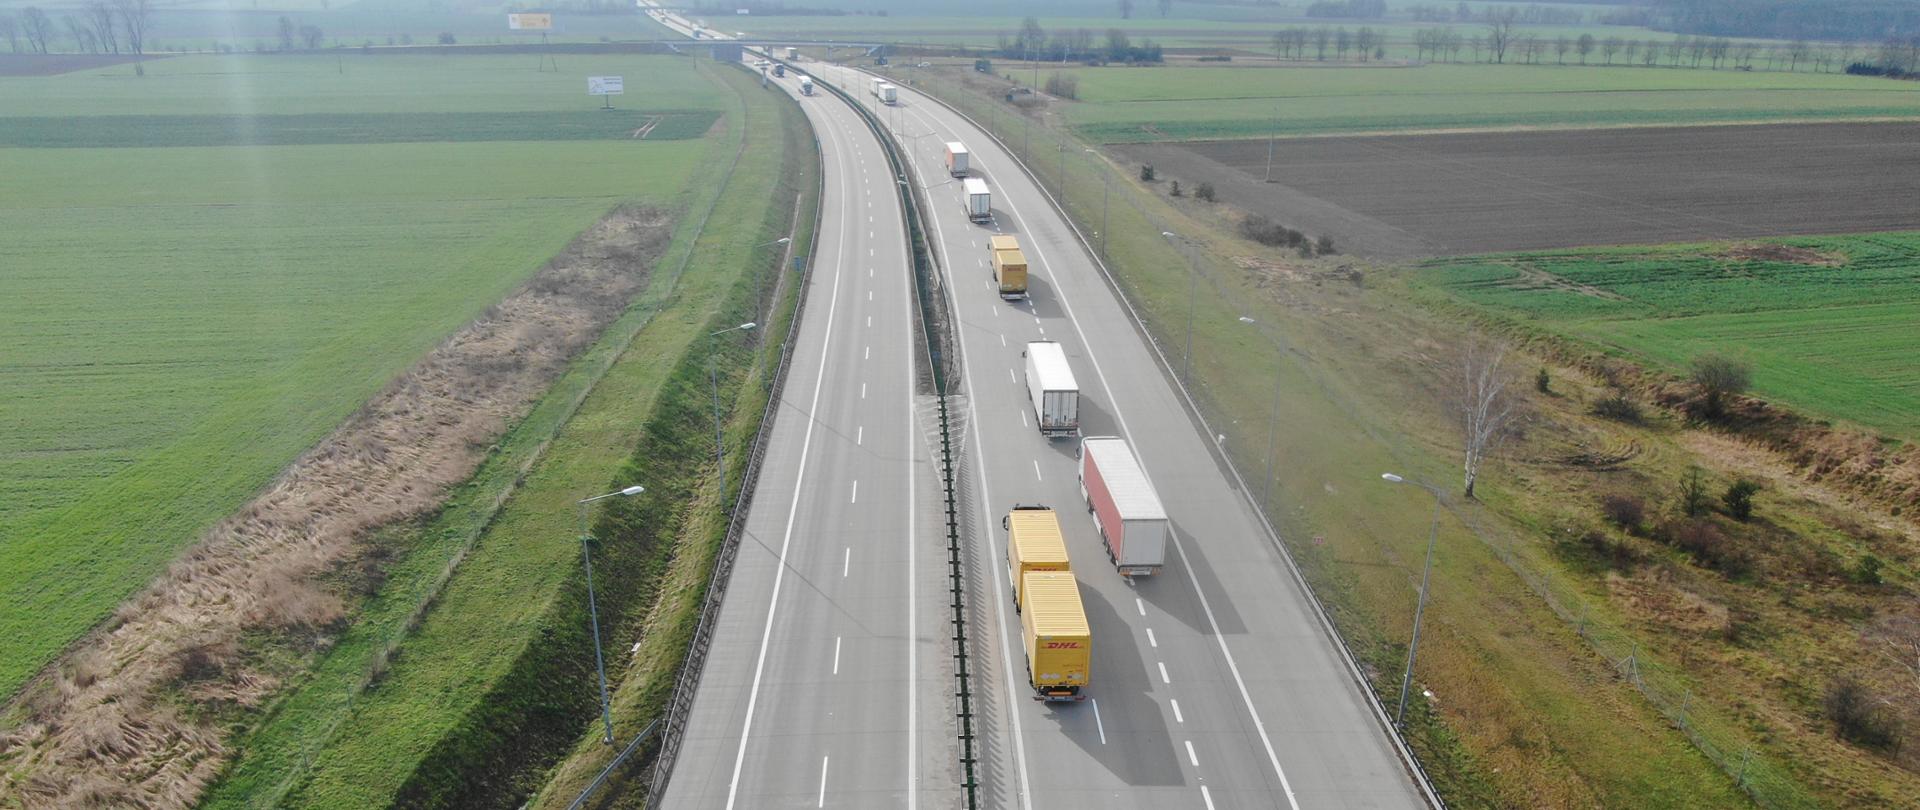 na zdjęciu widoczne dwie jezdnie autostrady, po której poruszają się pojazdy. Po obu stronach drogi łąki i pola